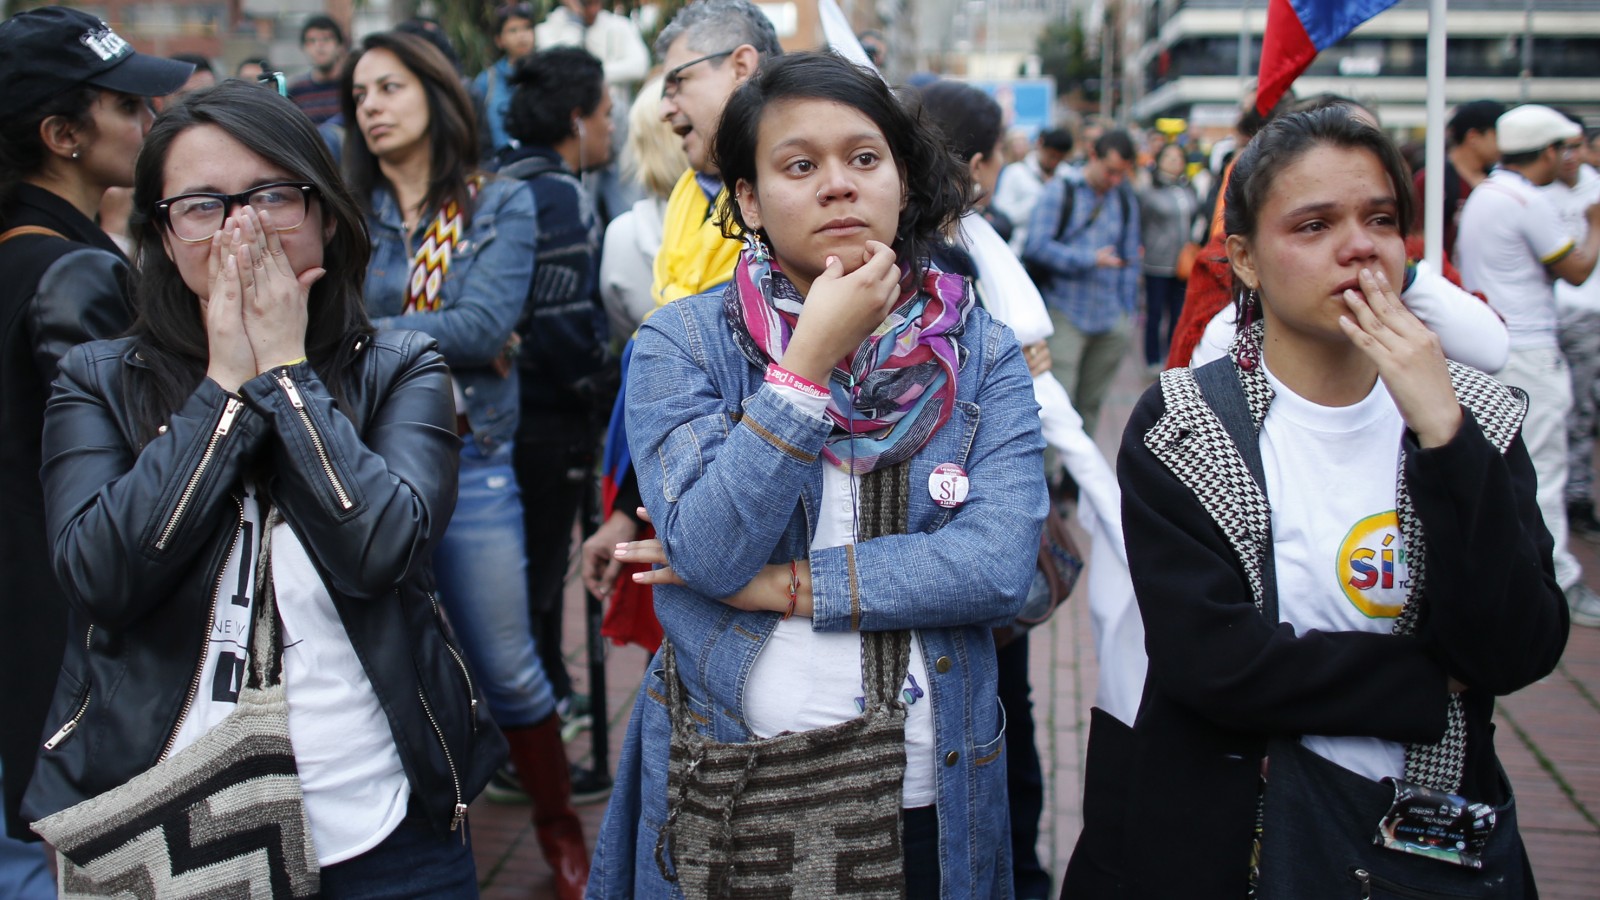 תומכות בהסכם השלום בקולומביה צופות בתוצאות משאל העם (צילום: סוכנות AP).